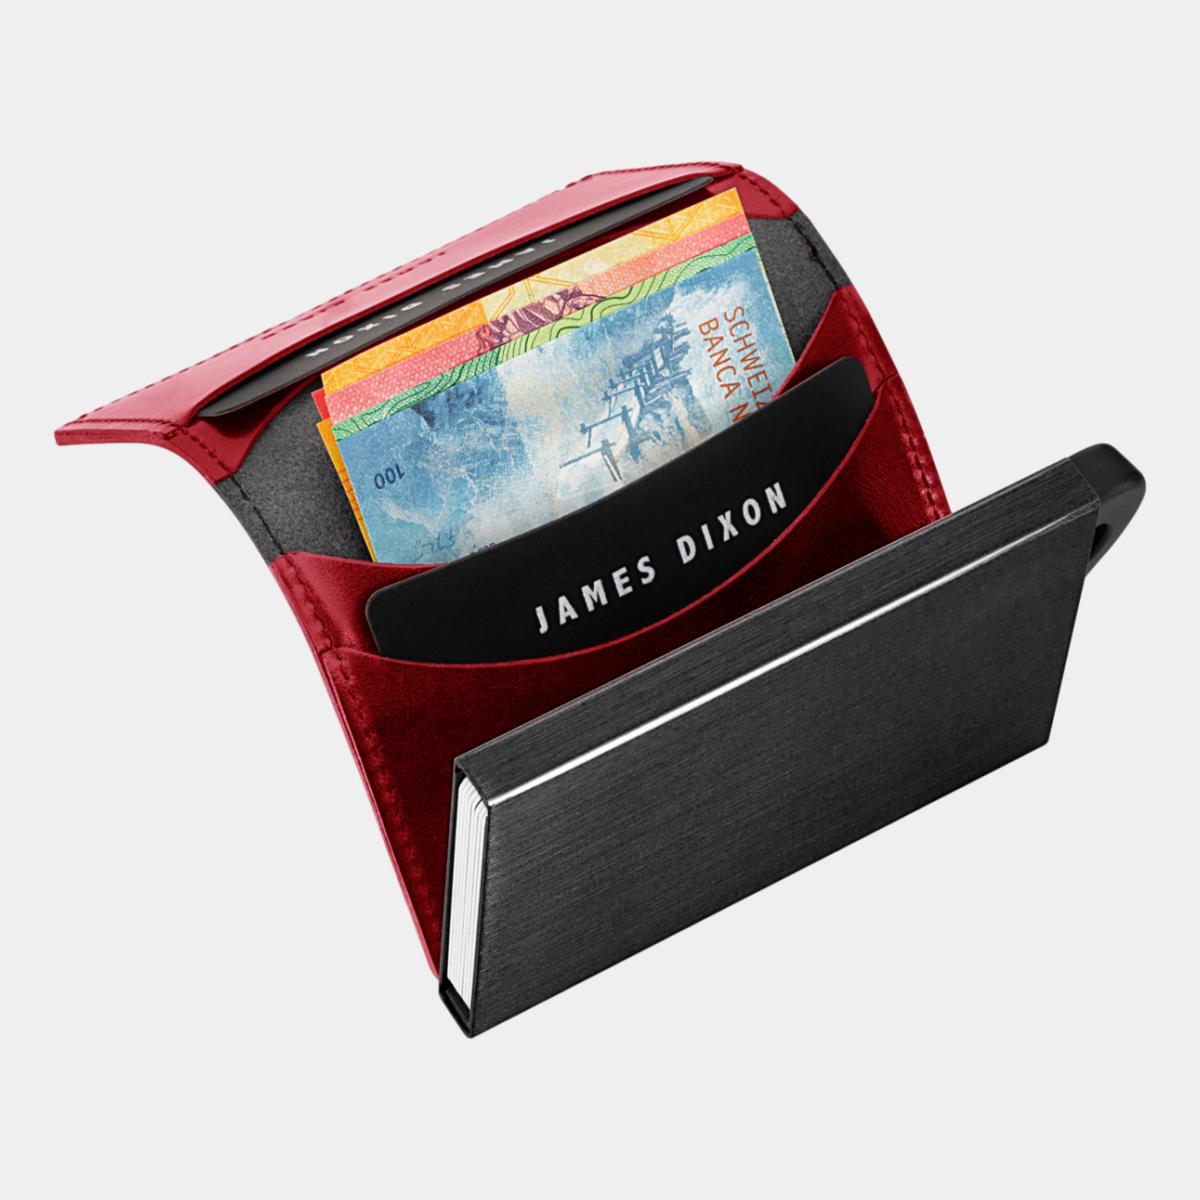 jd0221 james dixon puro classic black devil red wallet notes